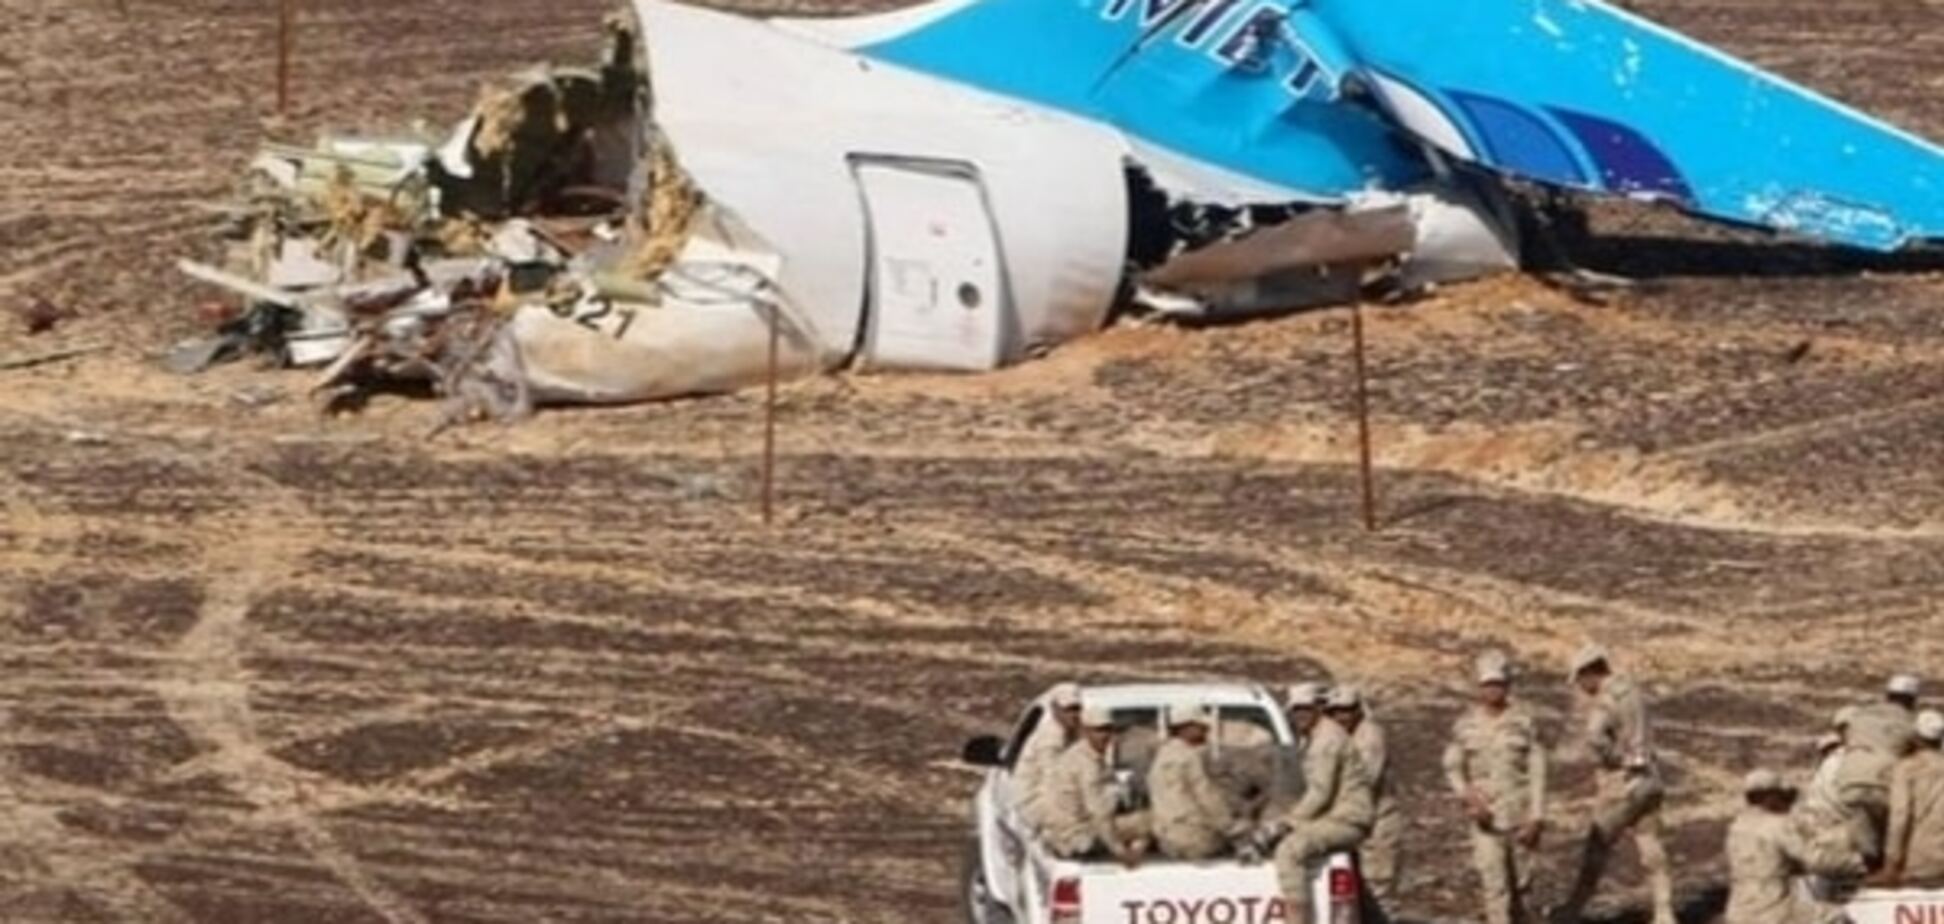 Почти половина россиян назвали теракт причиной гибели A-321 в Египте